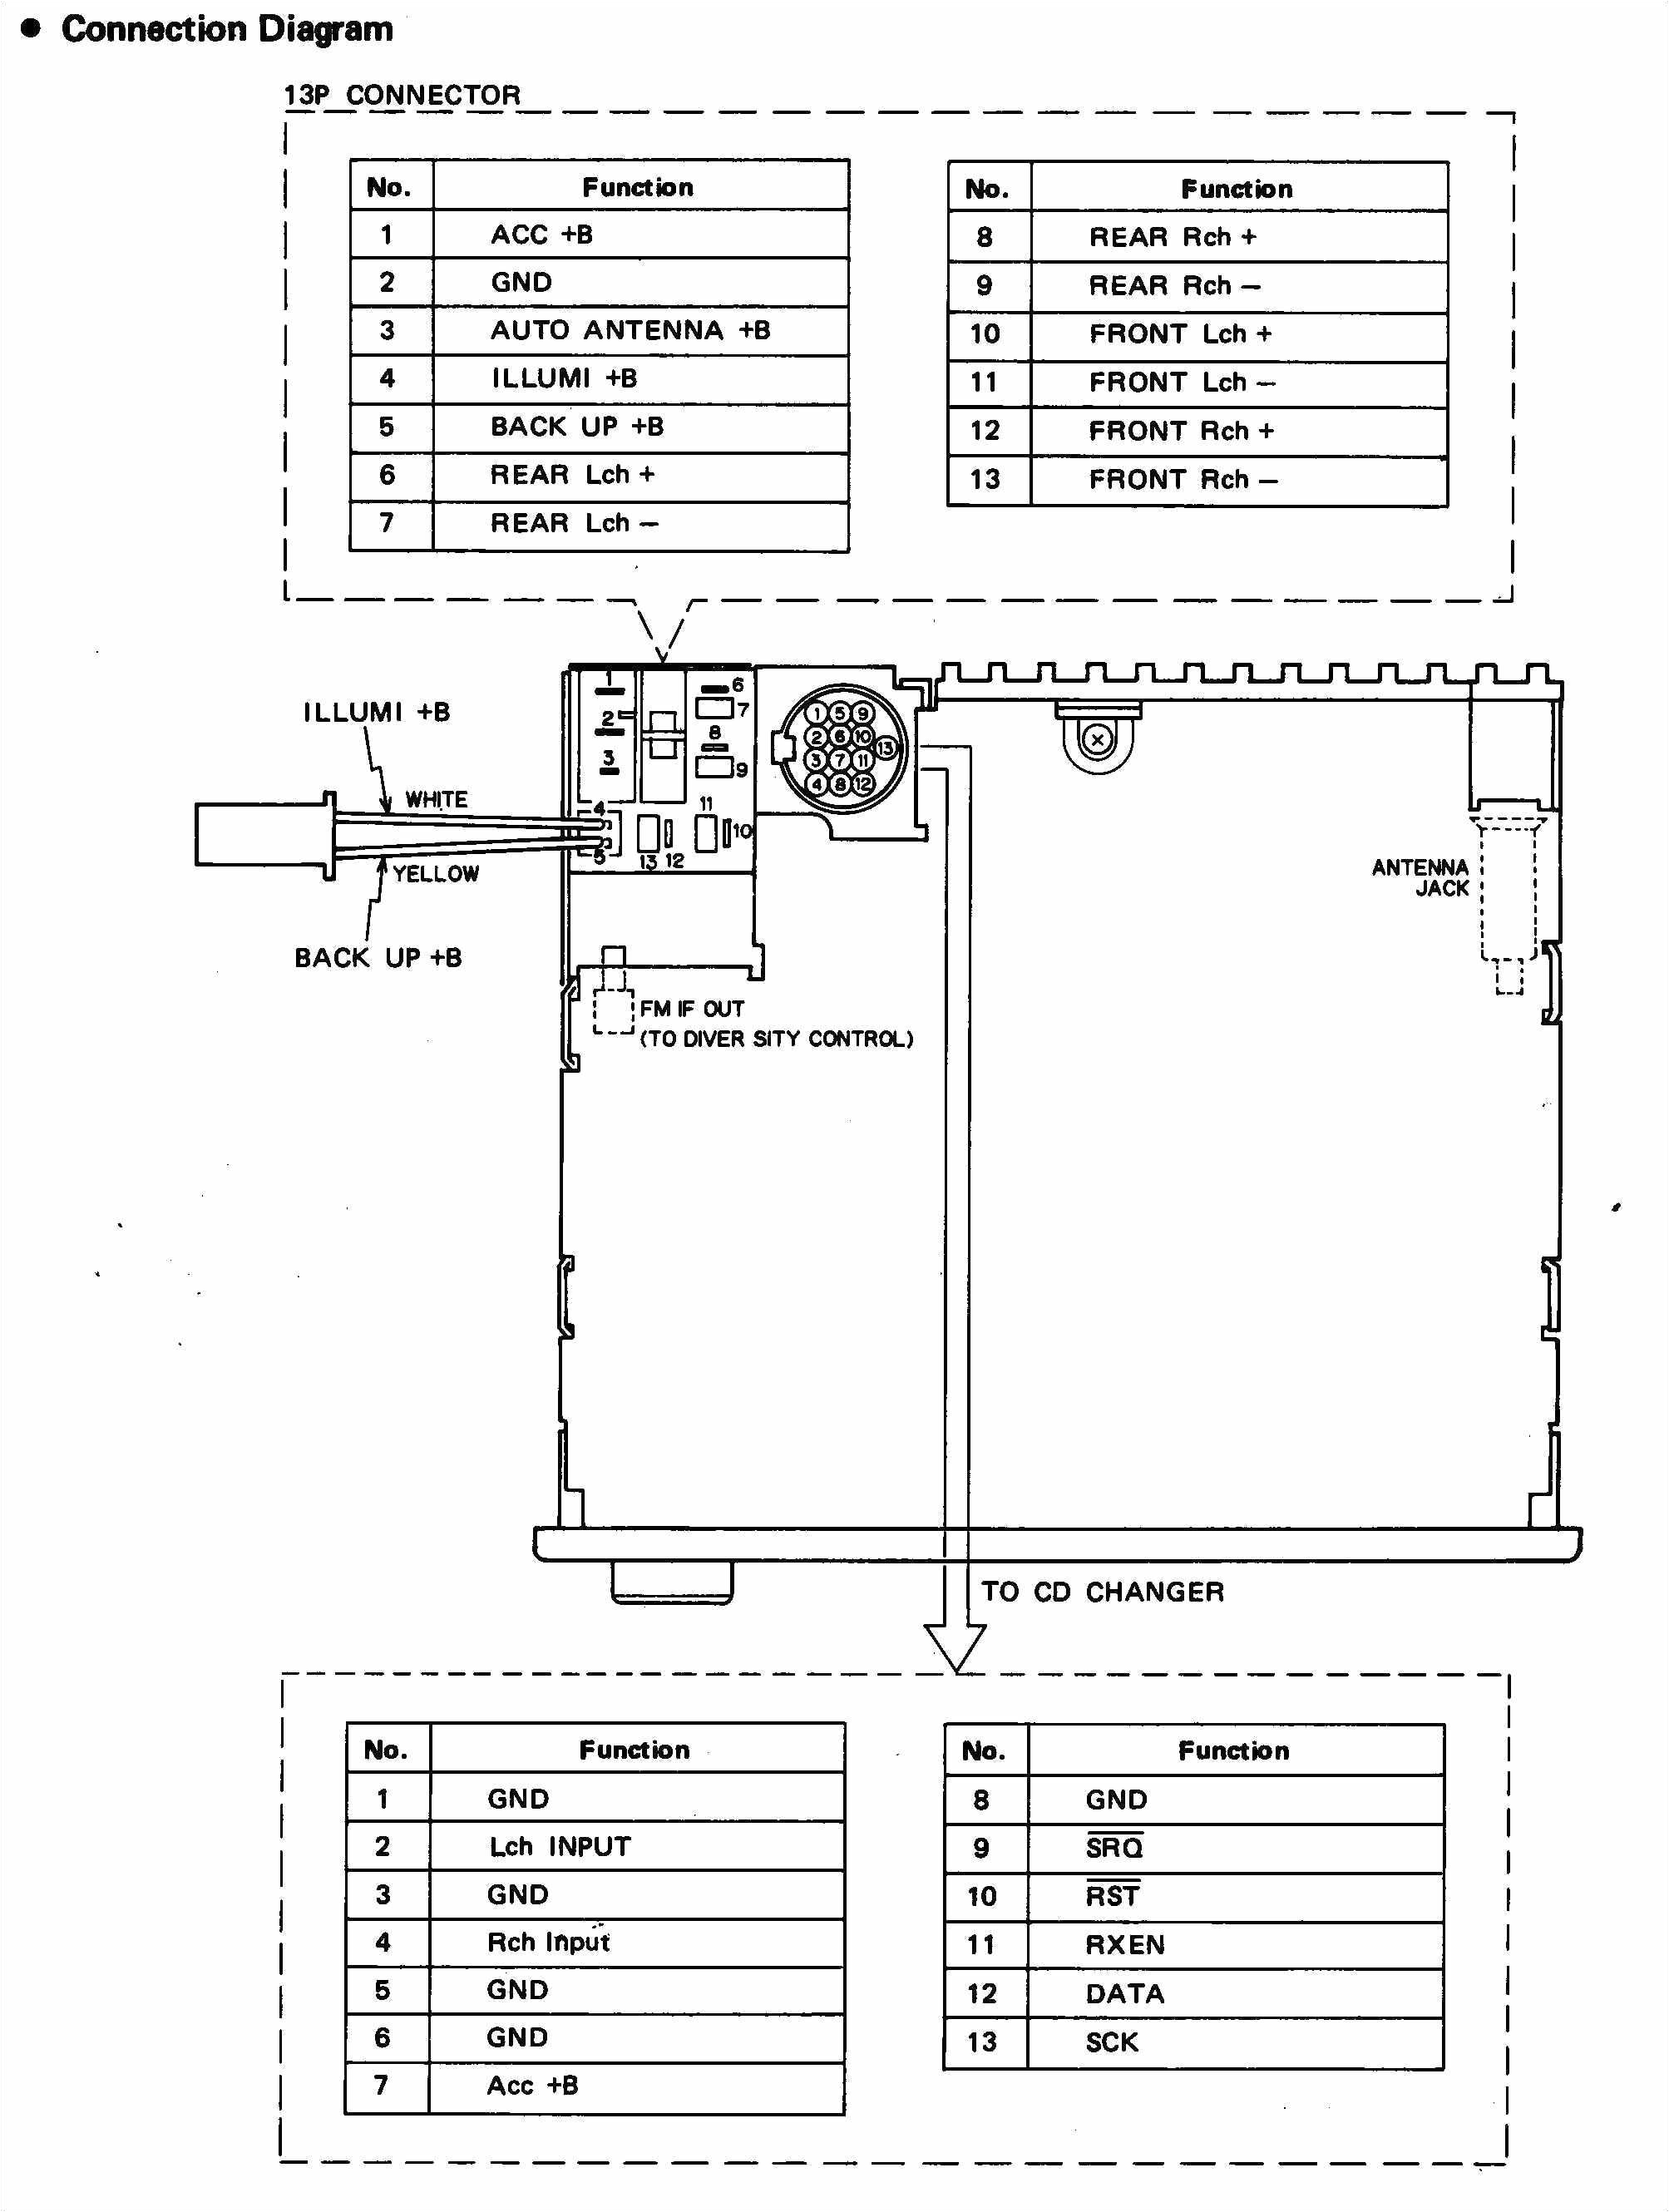 kenwood kdc 352u wiring diagram 1 wiring diagram source mix kdc 352u wiring diagram 15